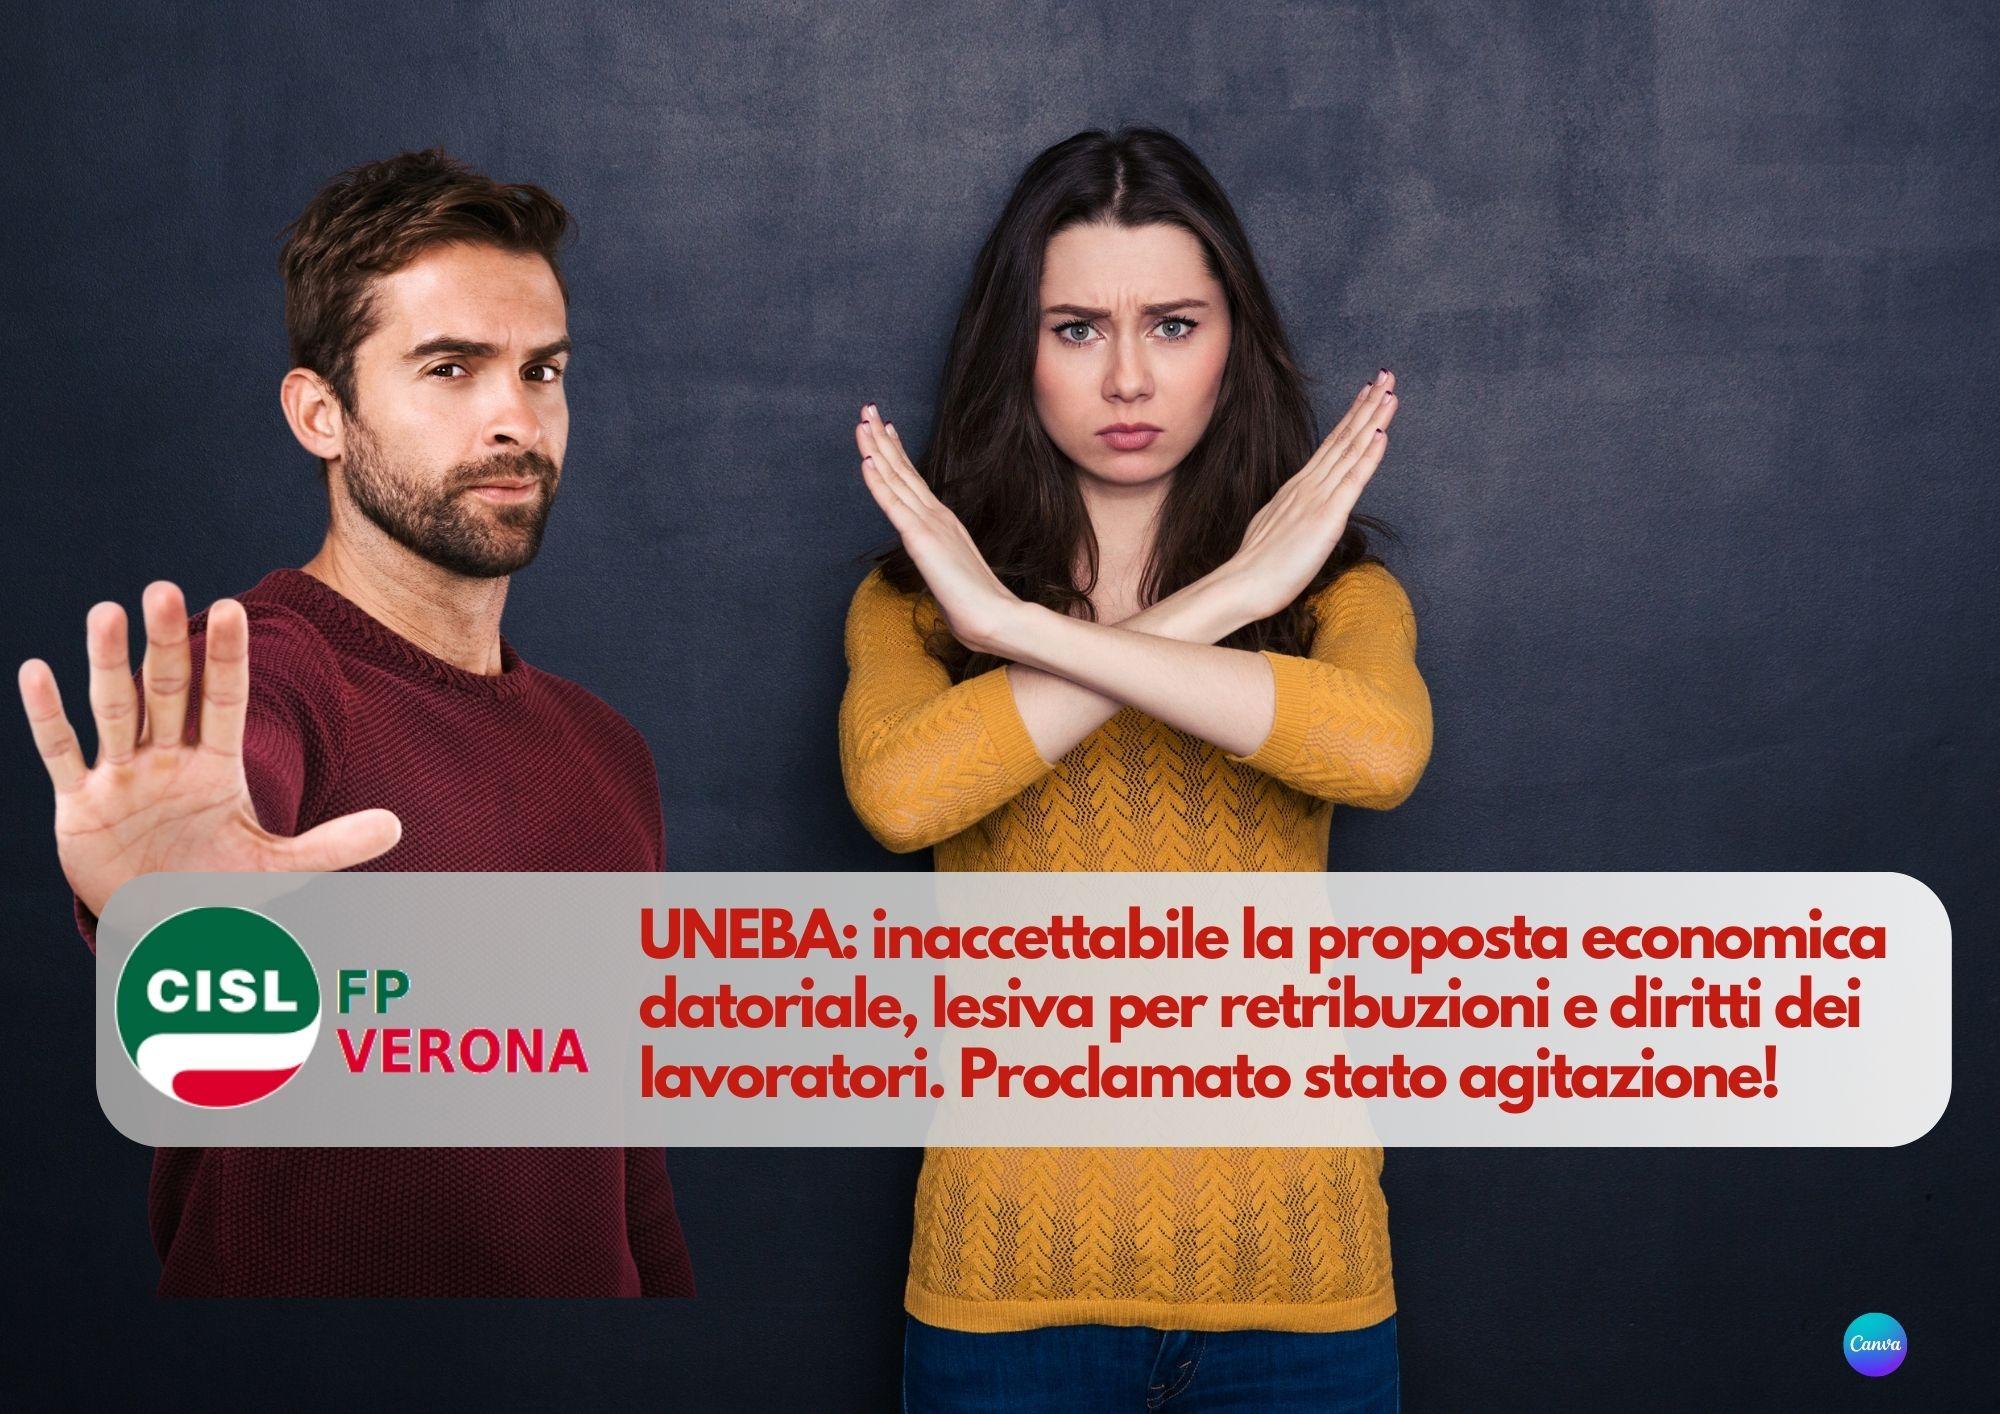 CISL FP Verona. UNEBA inaccettabile la proposta economica datoriale. Proclamato stato agitazione